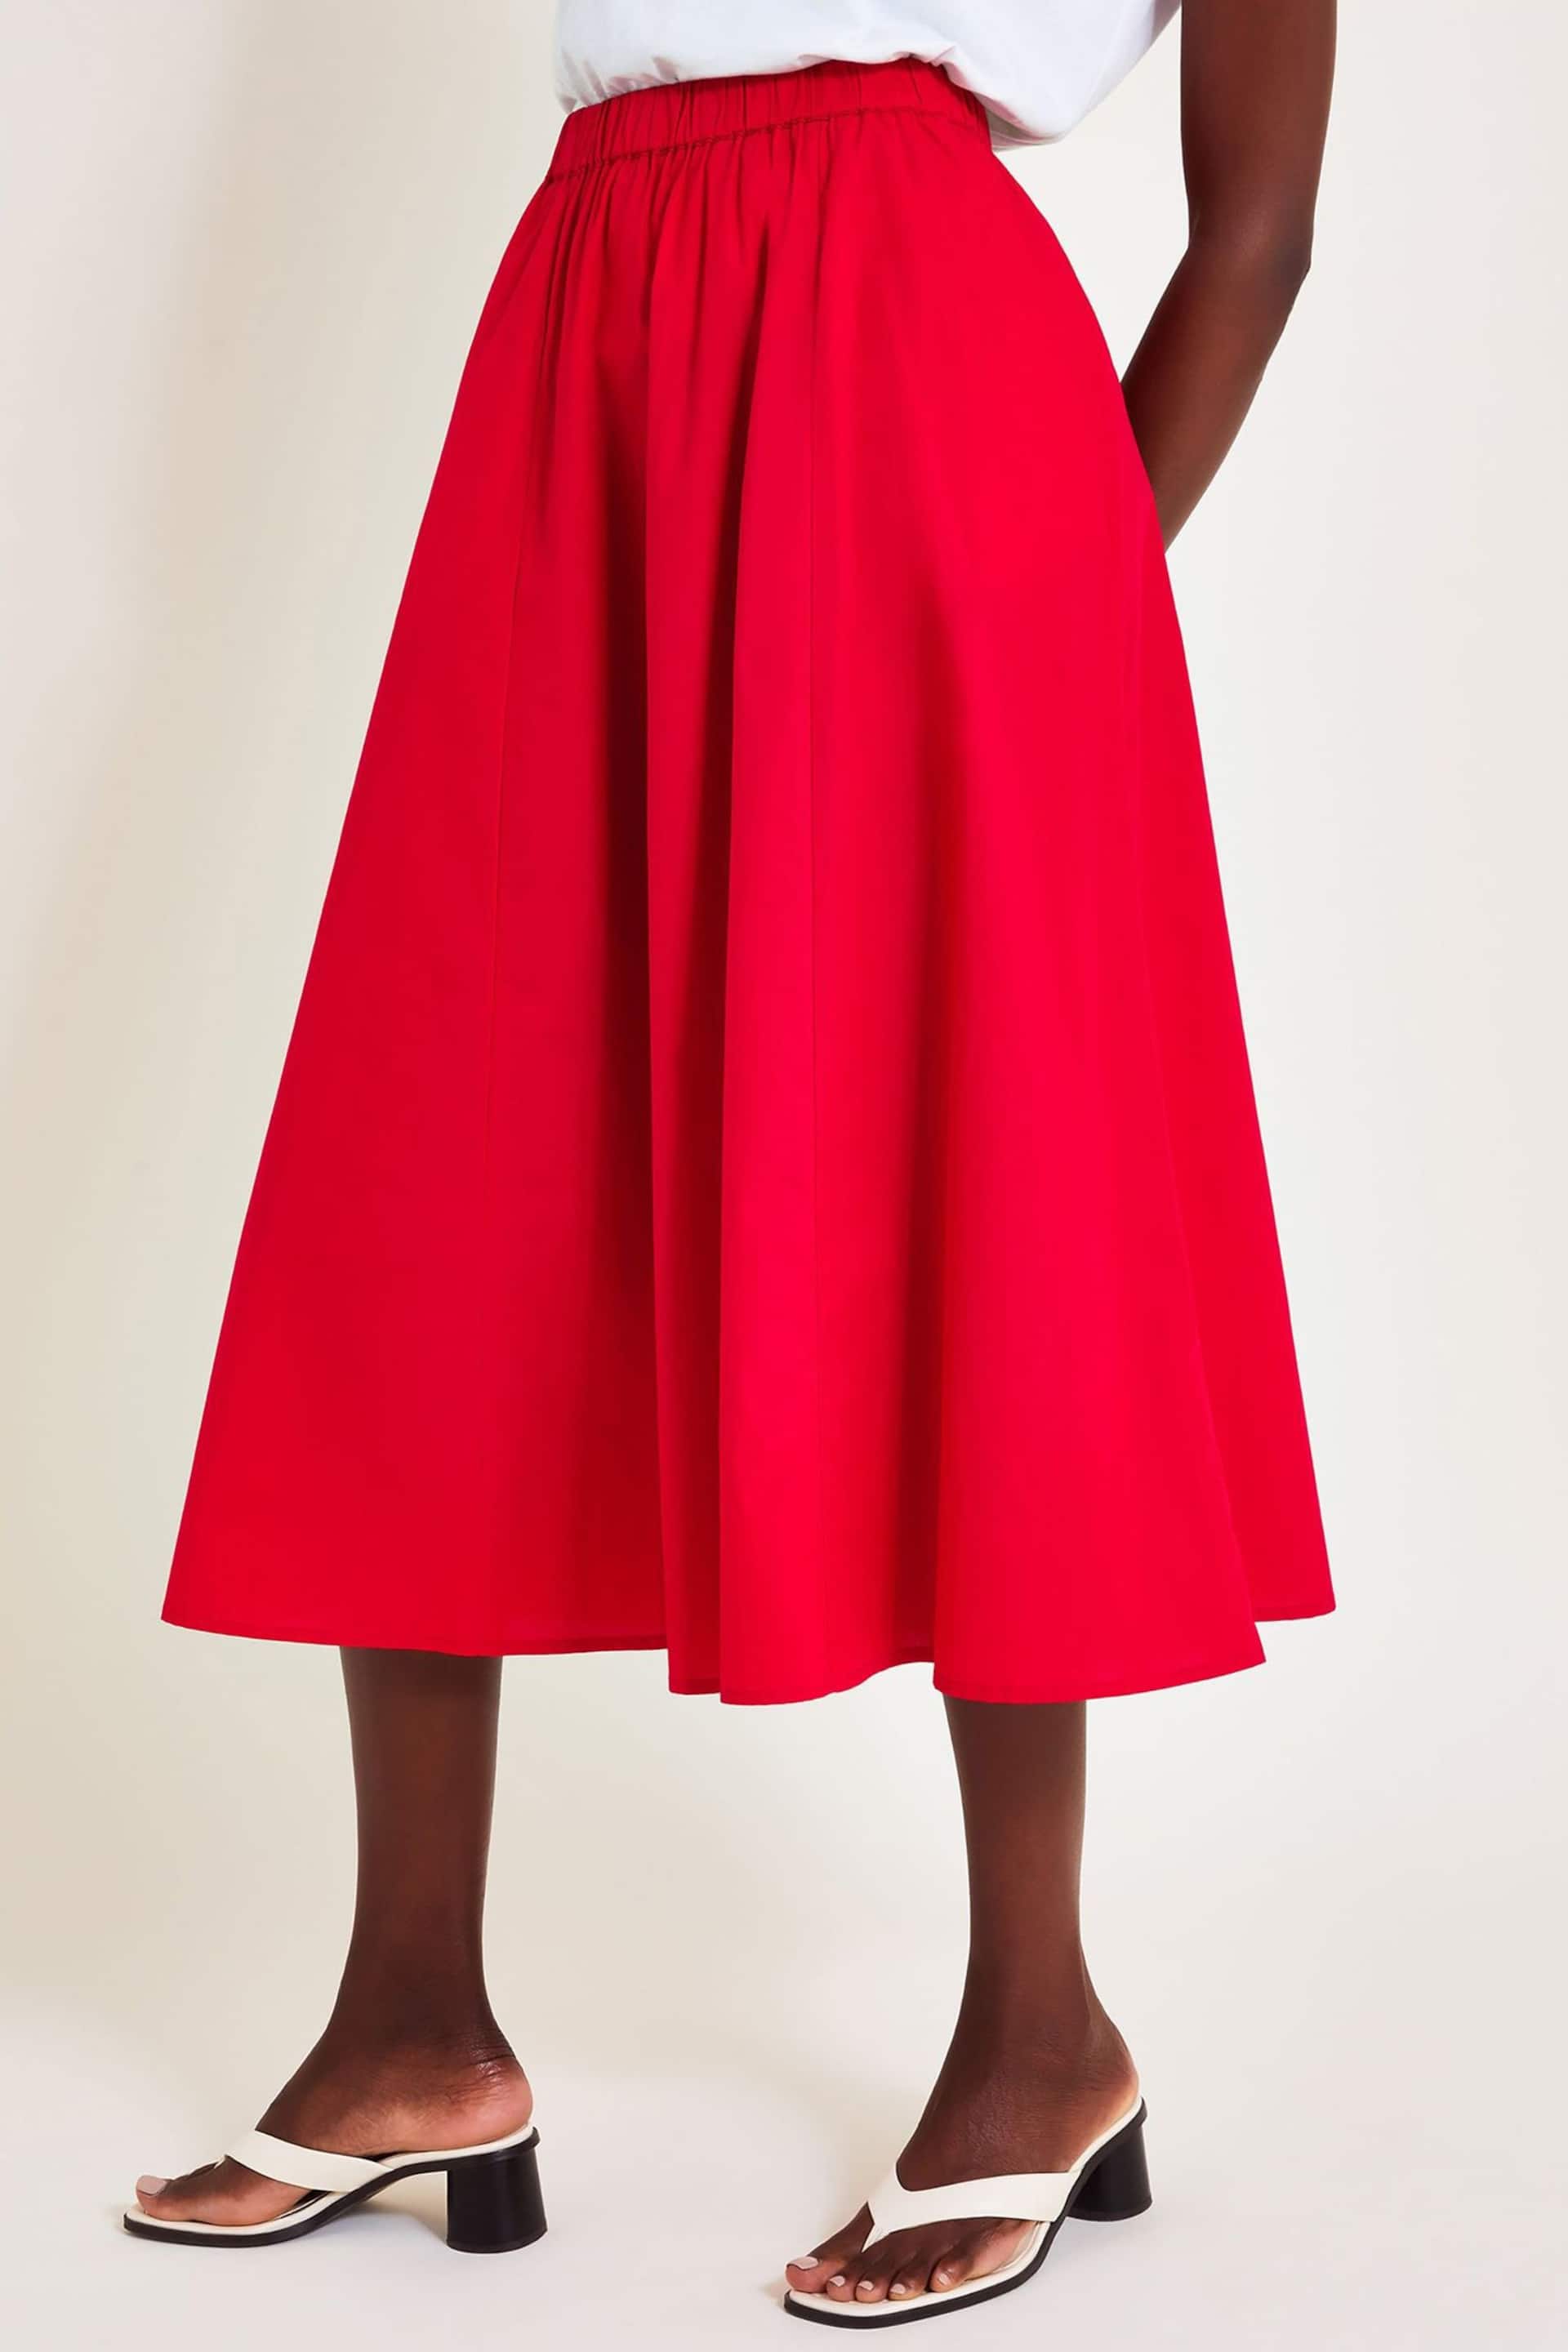 Monsoon Red Rachel Poplin Skirt - Image 1 of 6